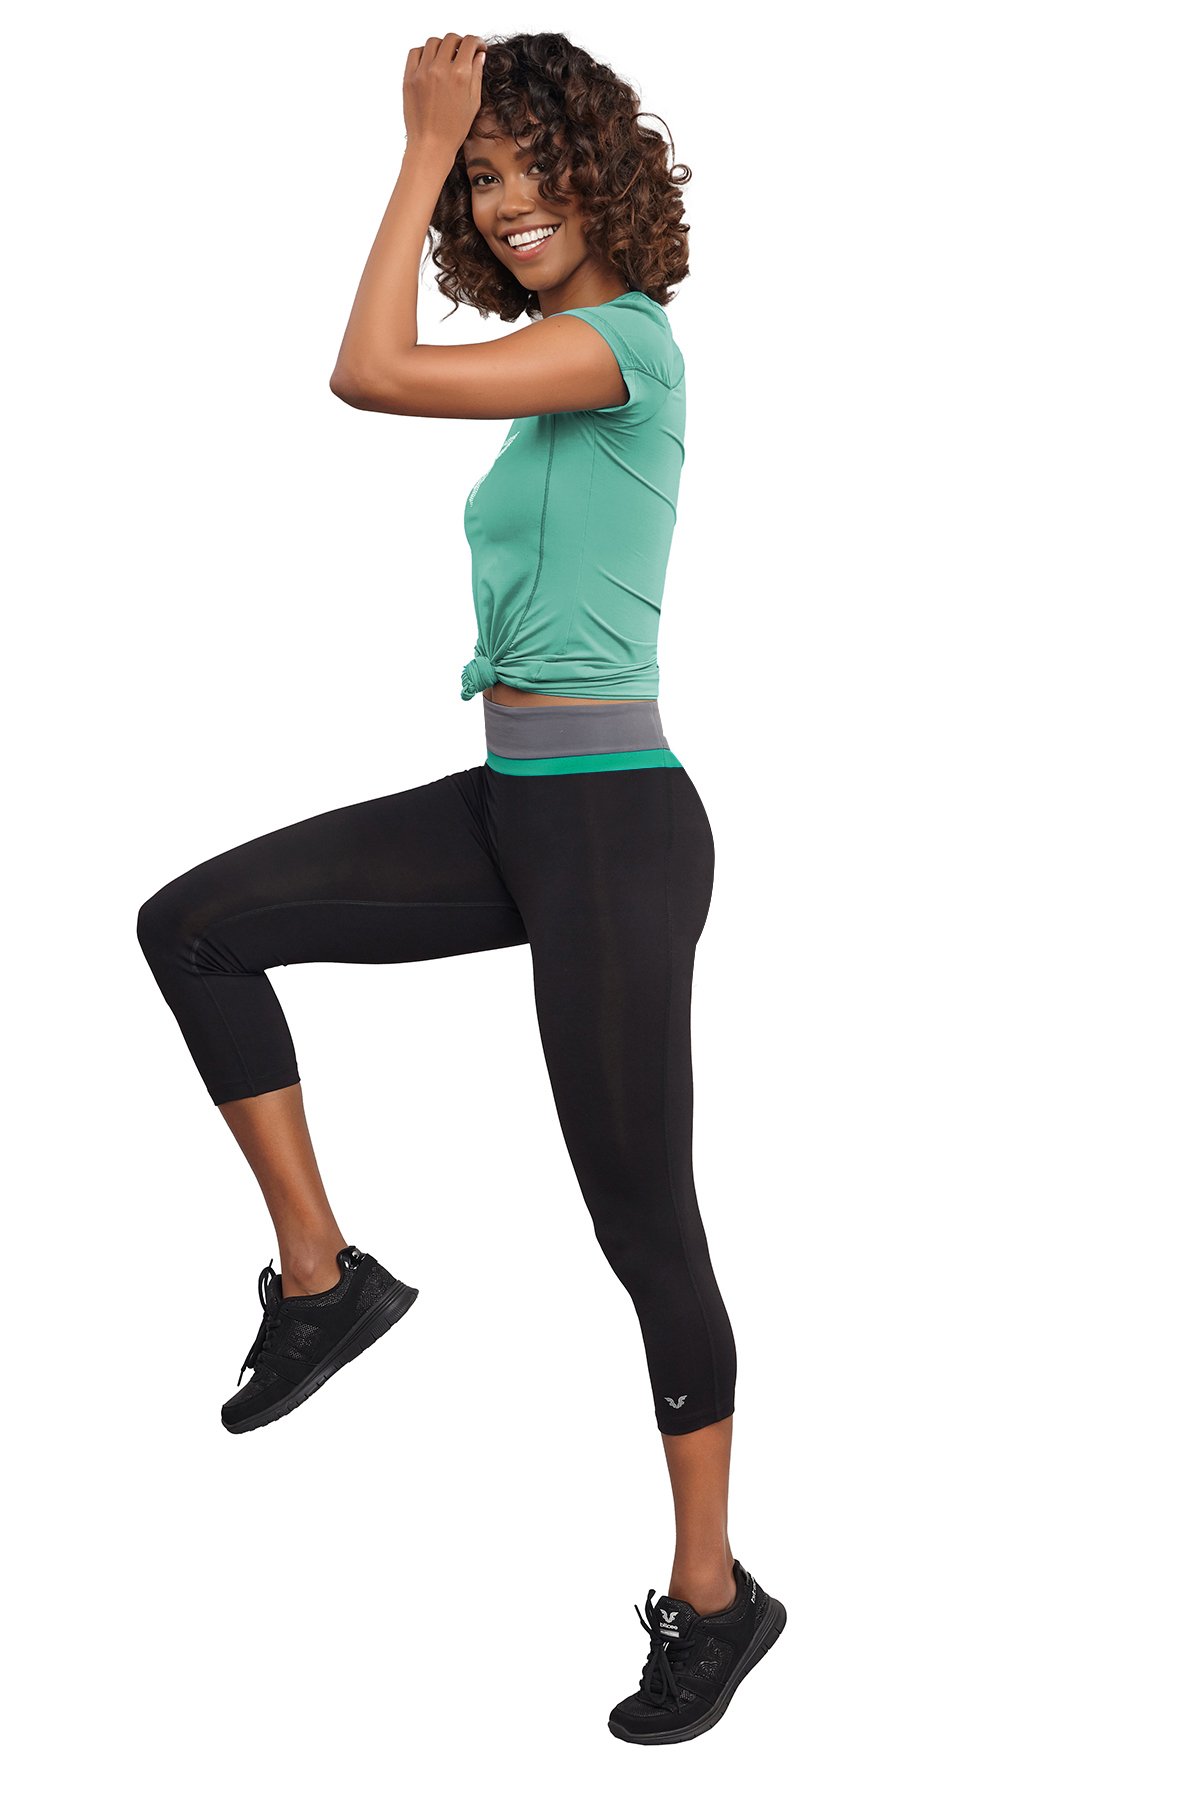 Kadın Siyah-Yeşil Yüksek Bel 3/4 Kısa Sporcu Toparlayıcı Tayt 7118